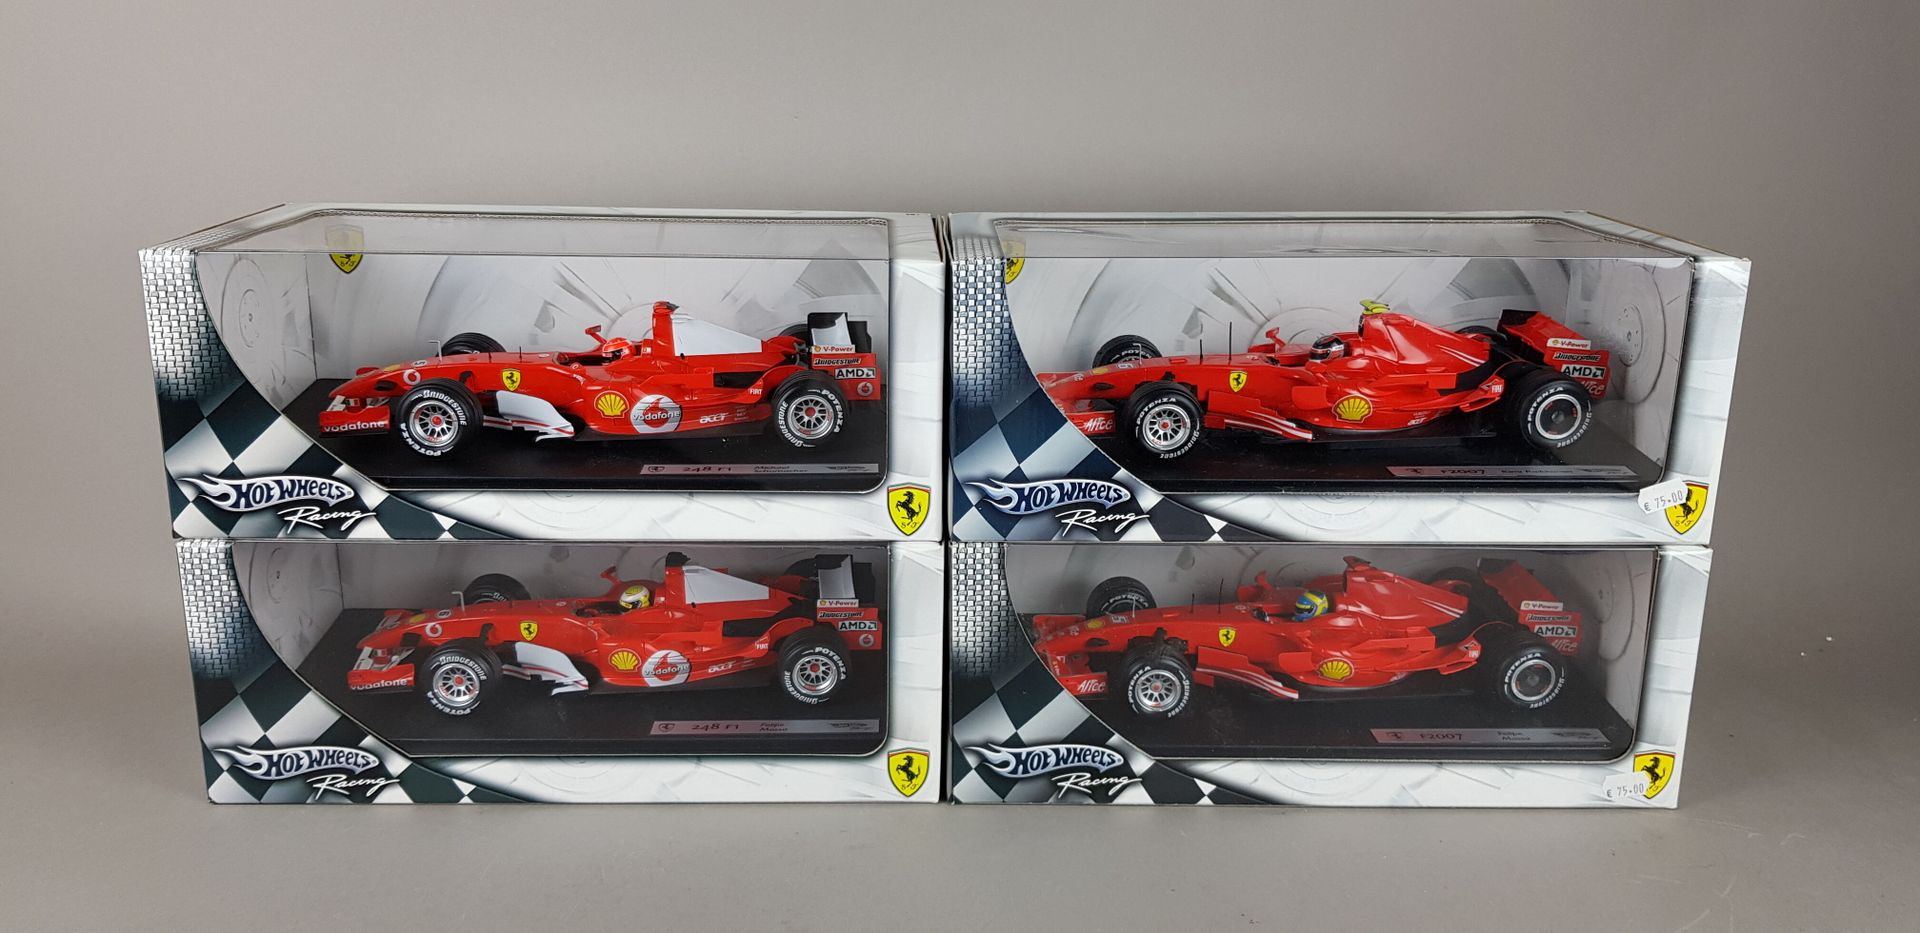 Null HOT WHEELS - QUATRE Ferrari échelle 1/18 :

1x F2007 Felipe Massa 

1x 248 &hellip;